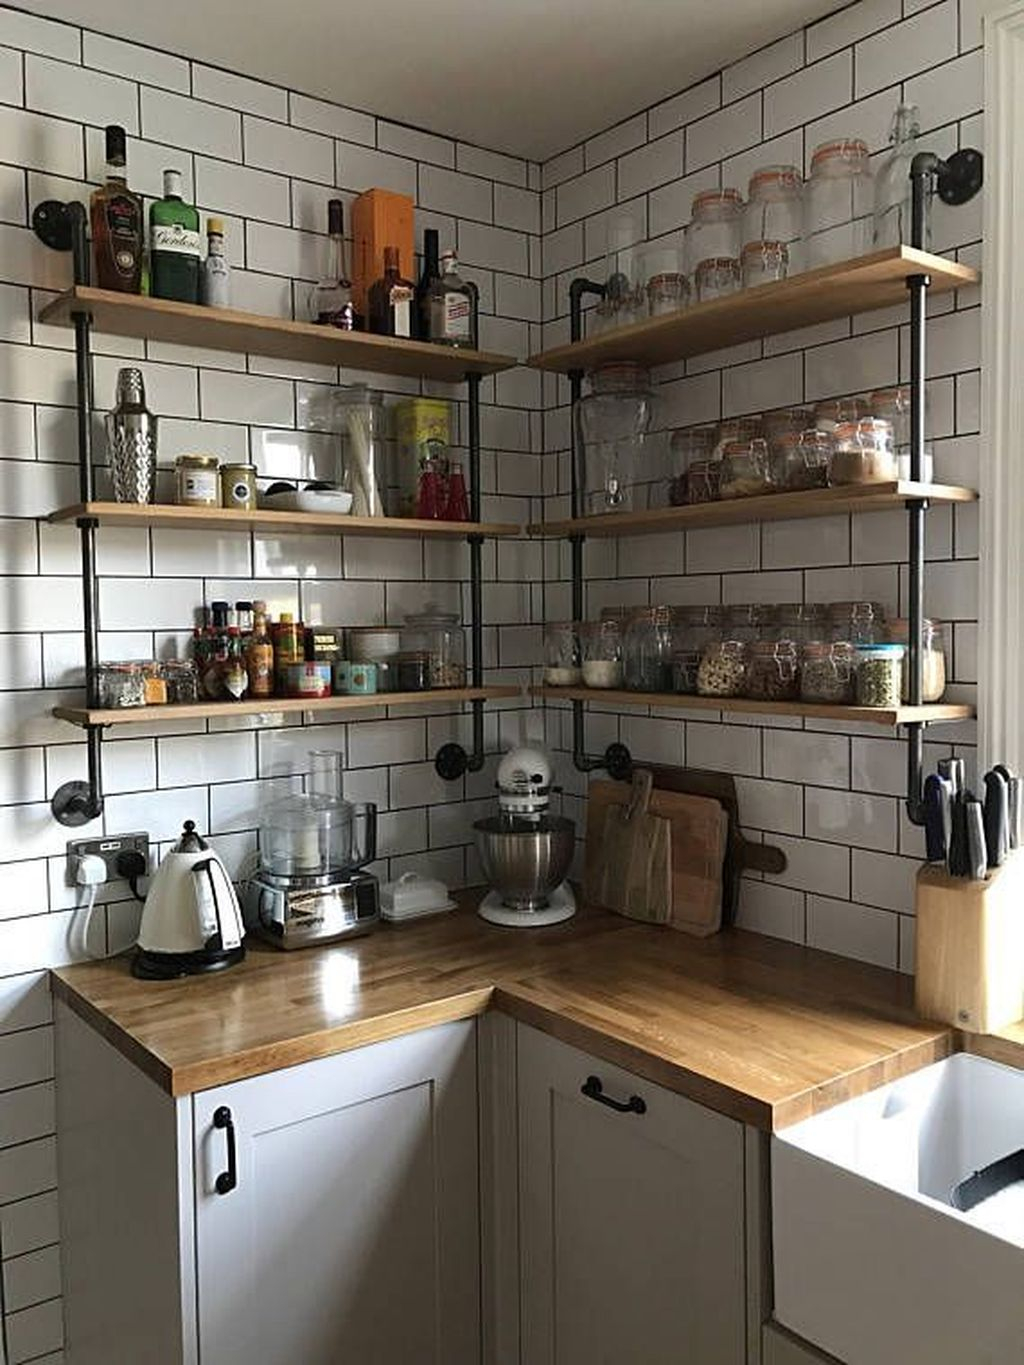 Wonderful Industrial Kitchen Shelf Design Ideas To Organize Your Kitchen43